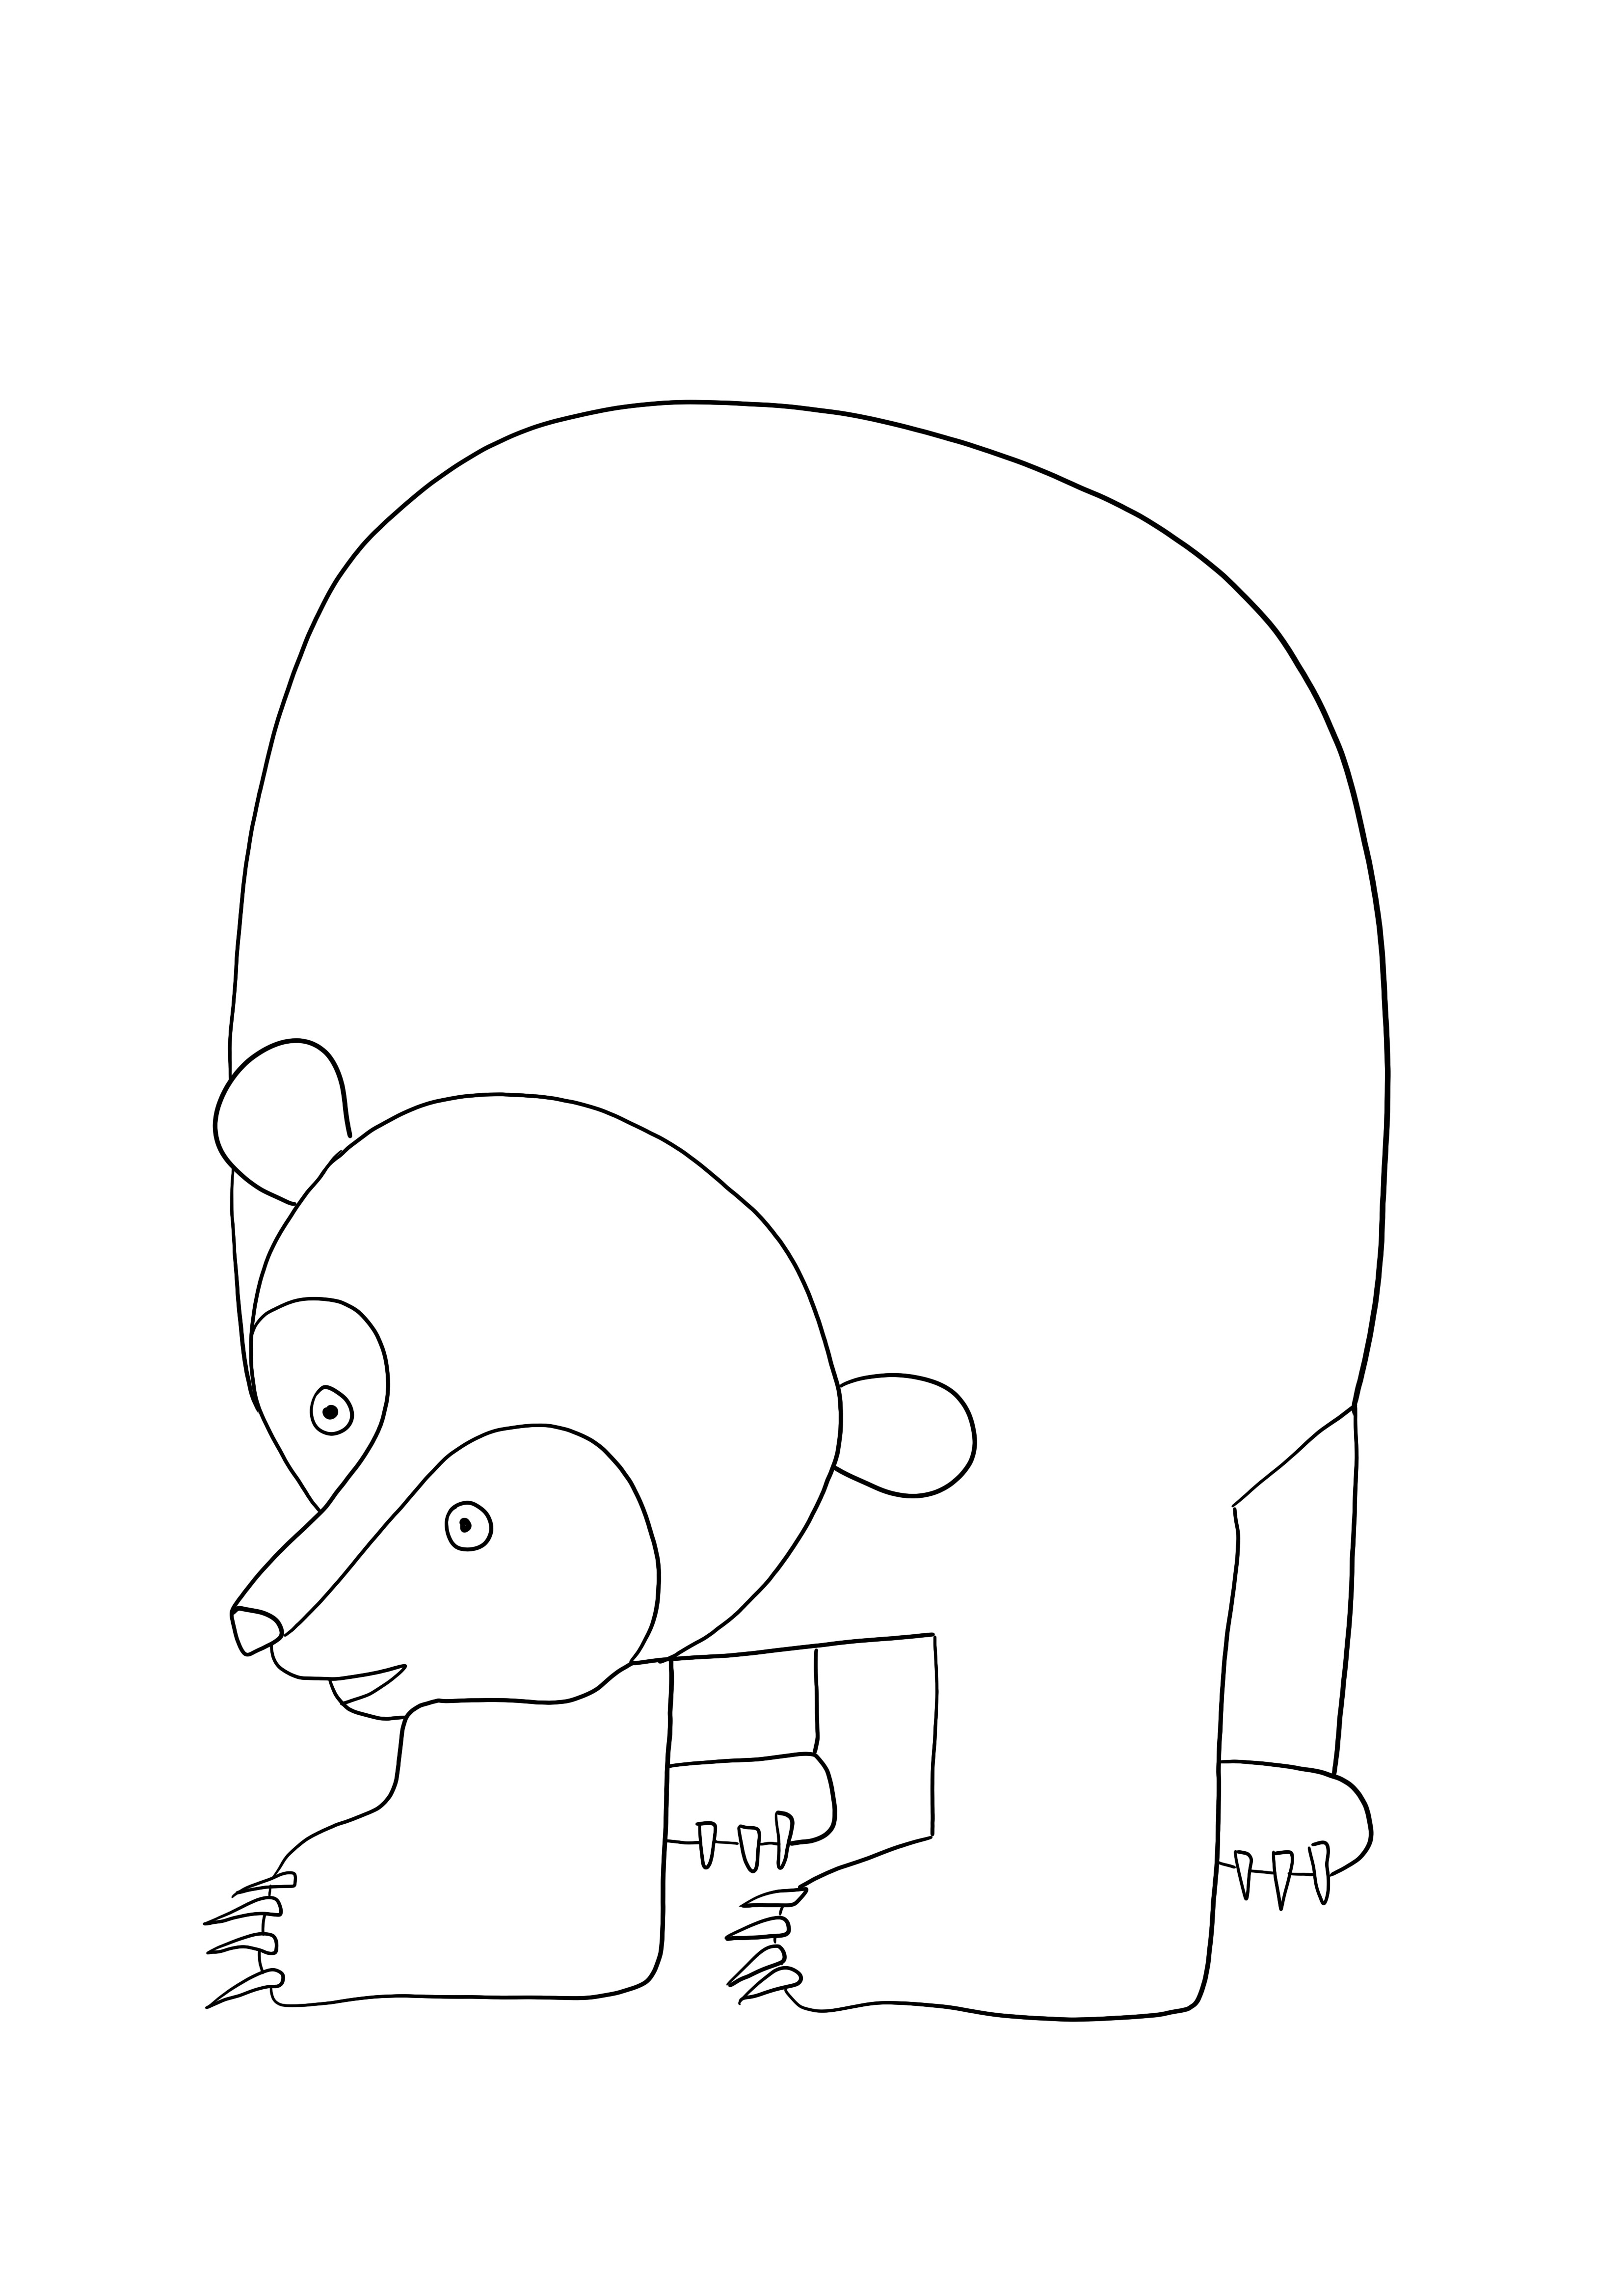 Urso pardo para imprimir gratuitamente e colorir para crianças de todas as idades